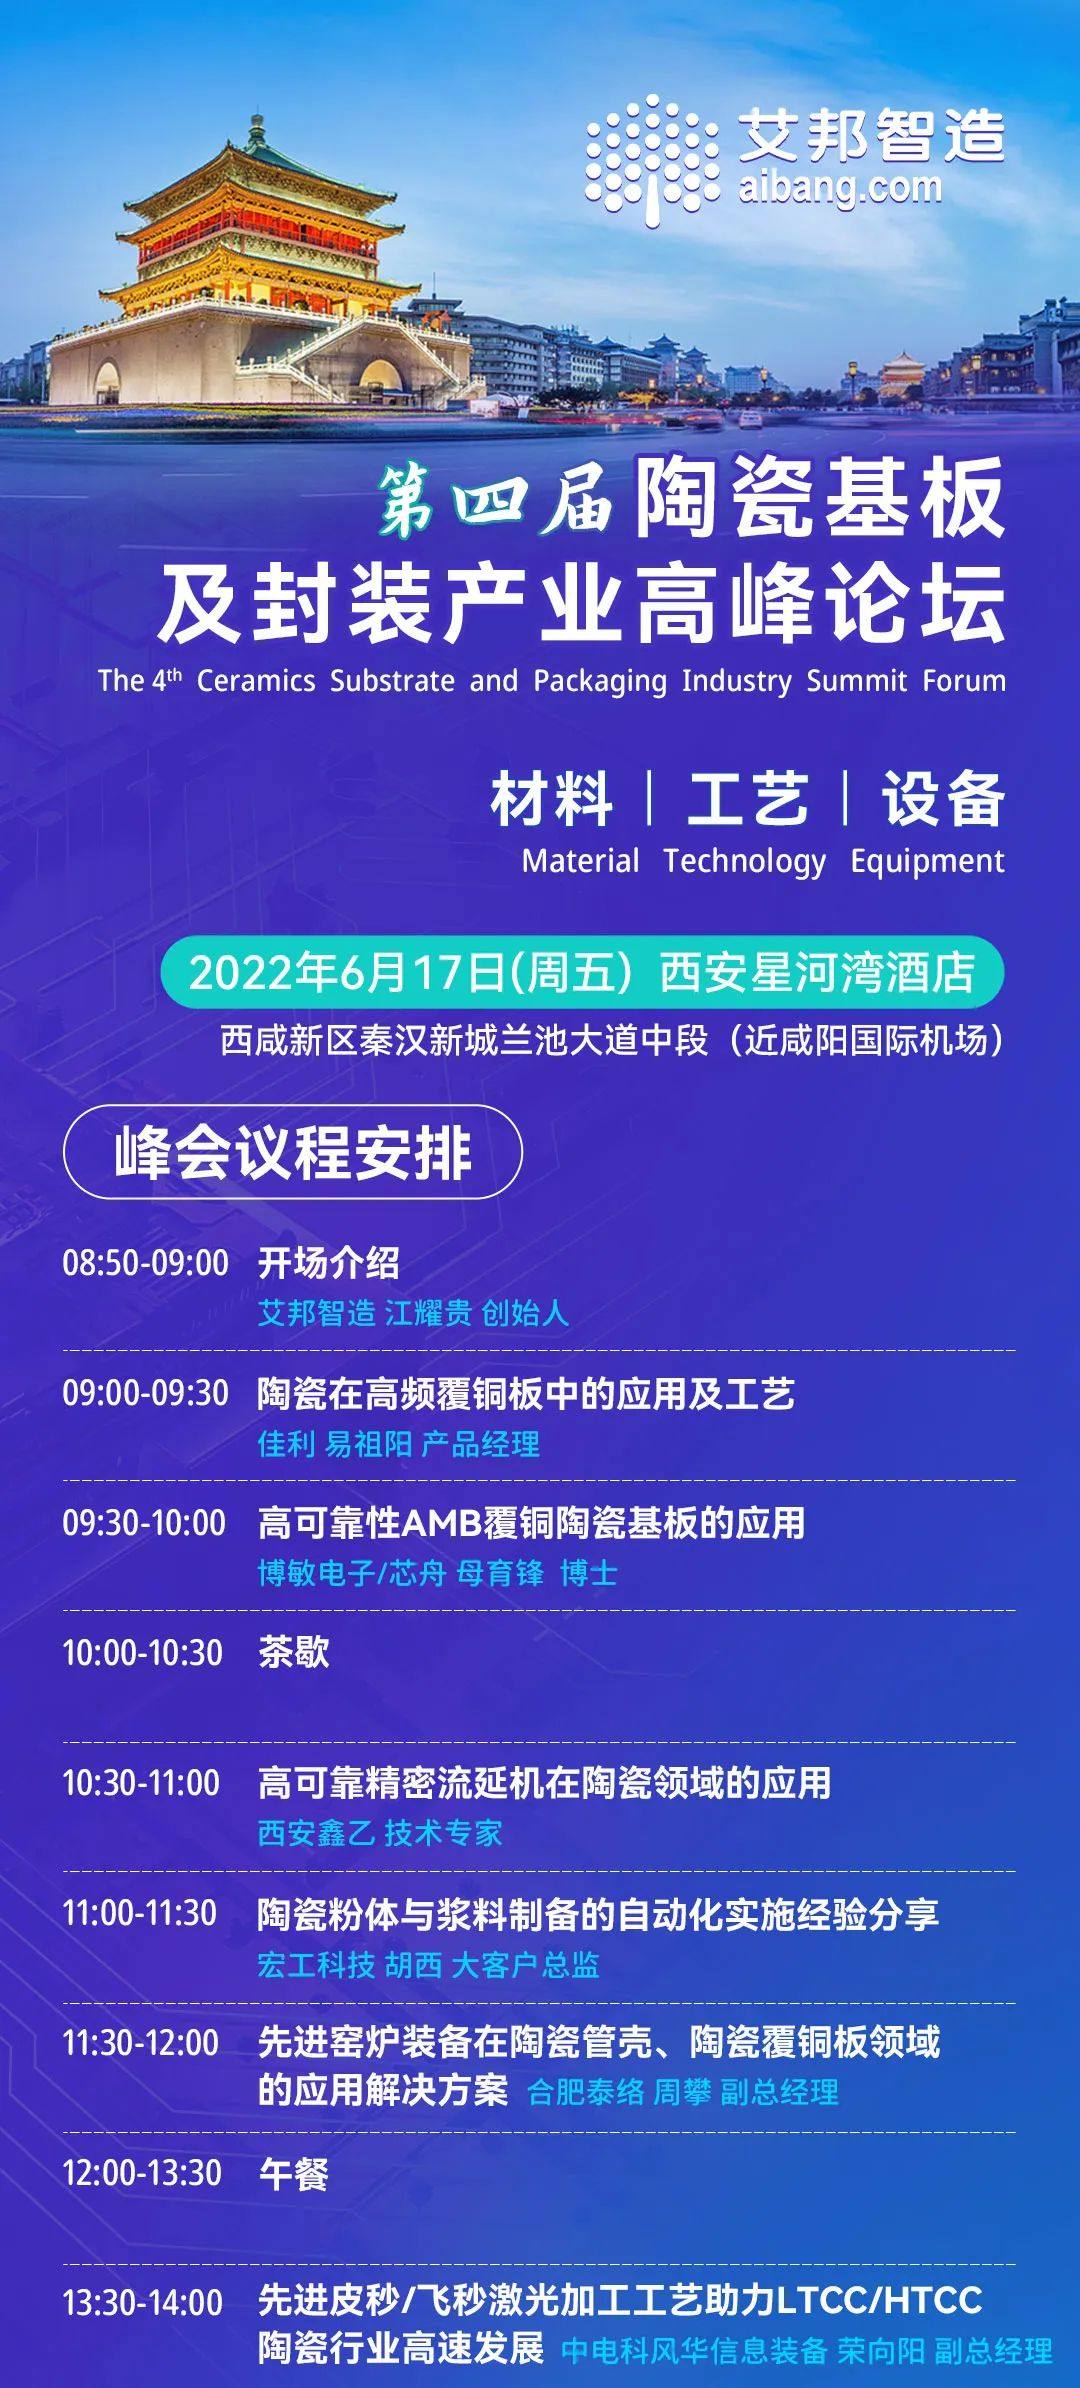 北京大学深圳研究生院将出席第四届陶瓷基板及封装产业高峰论坛并做主题演讲